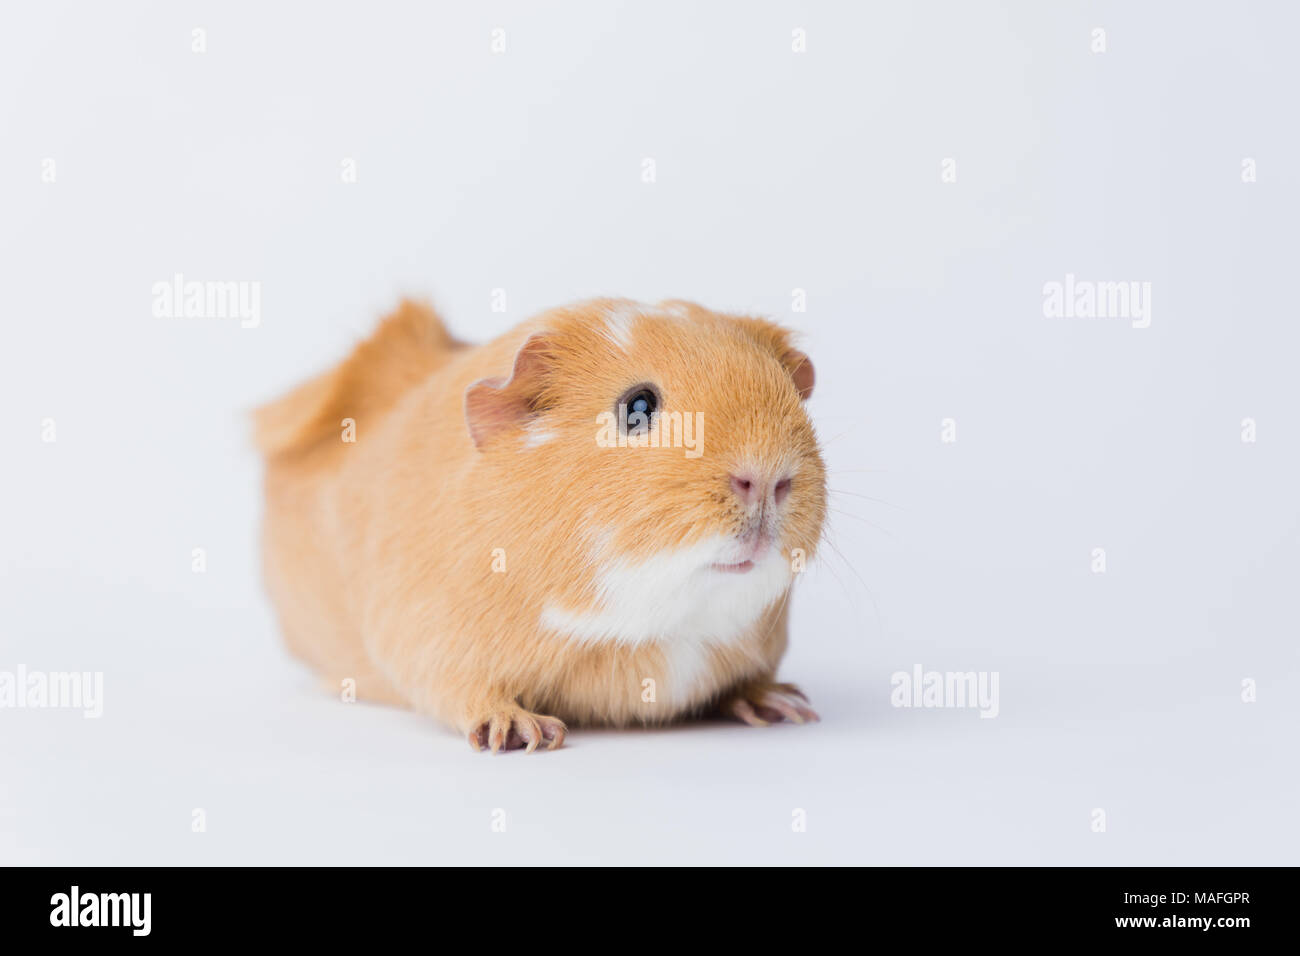 Brown adorable shorthair Cochon d'une rosette sur un arrière-plan transparent blanc, tourné sur un Canon 5D IV Banque D'Images